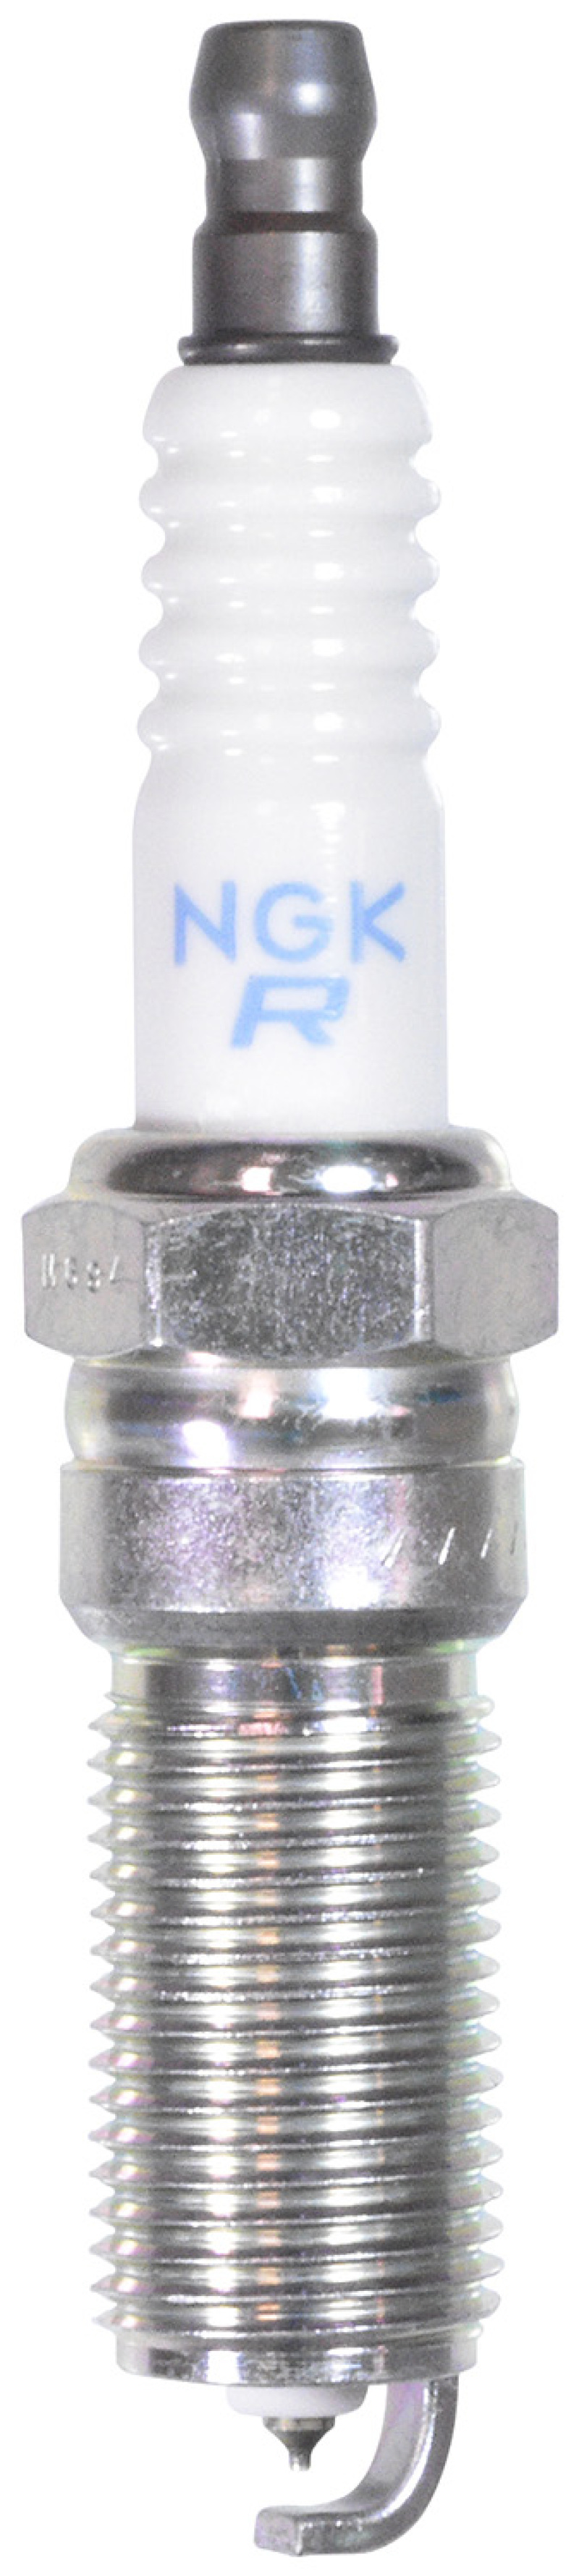 NGK Laser Platinum Spark Plug Box of 4 (LTR6DP13) - 90374